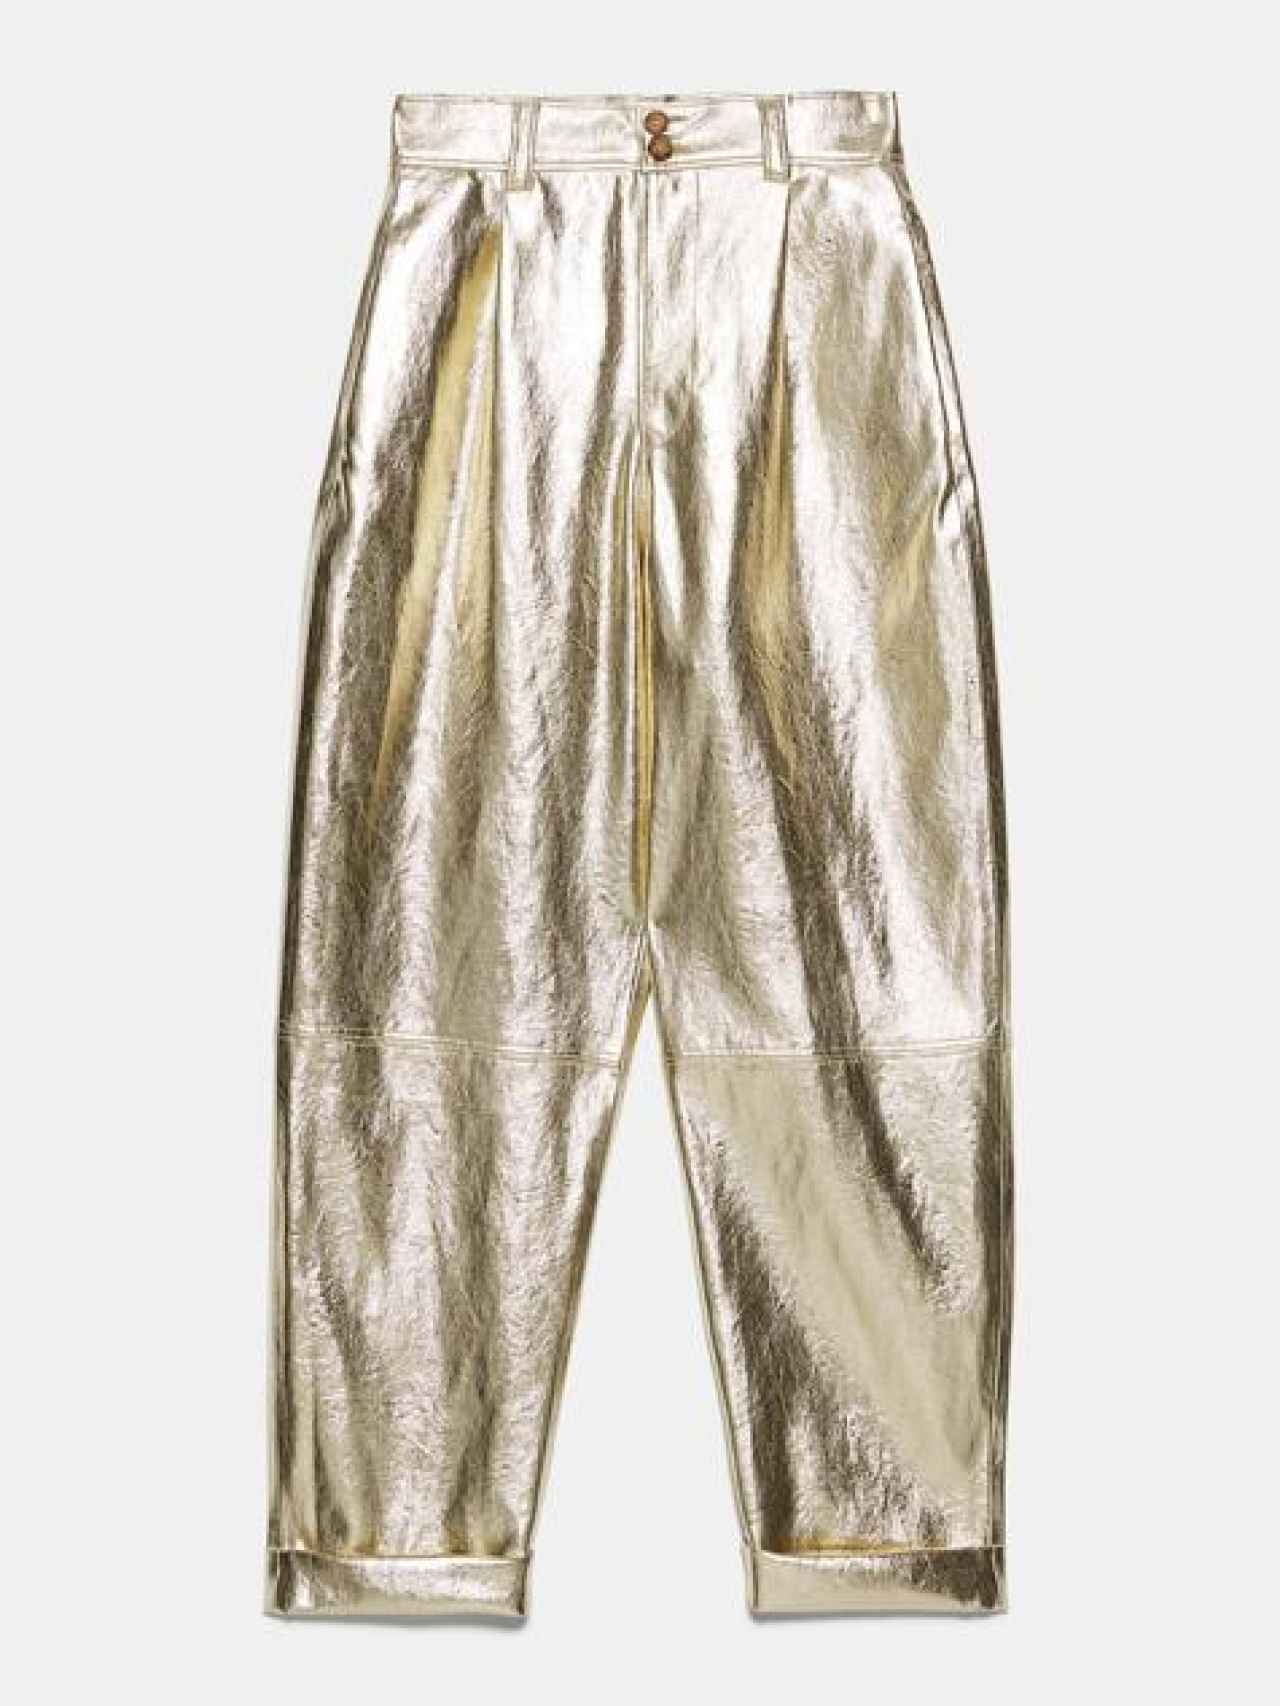 Adiós a los pantalones dorados, Zara confirma que este color